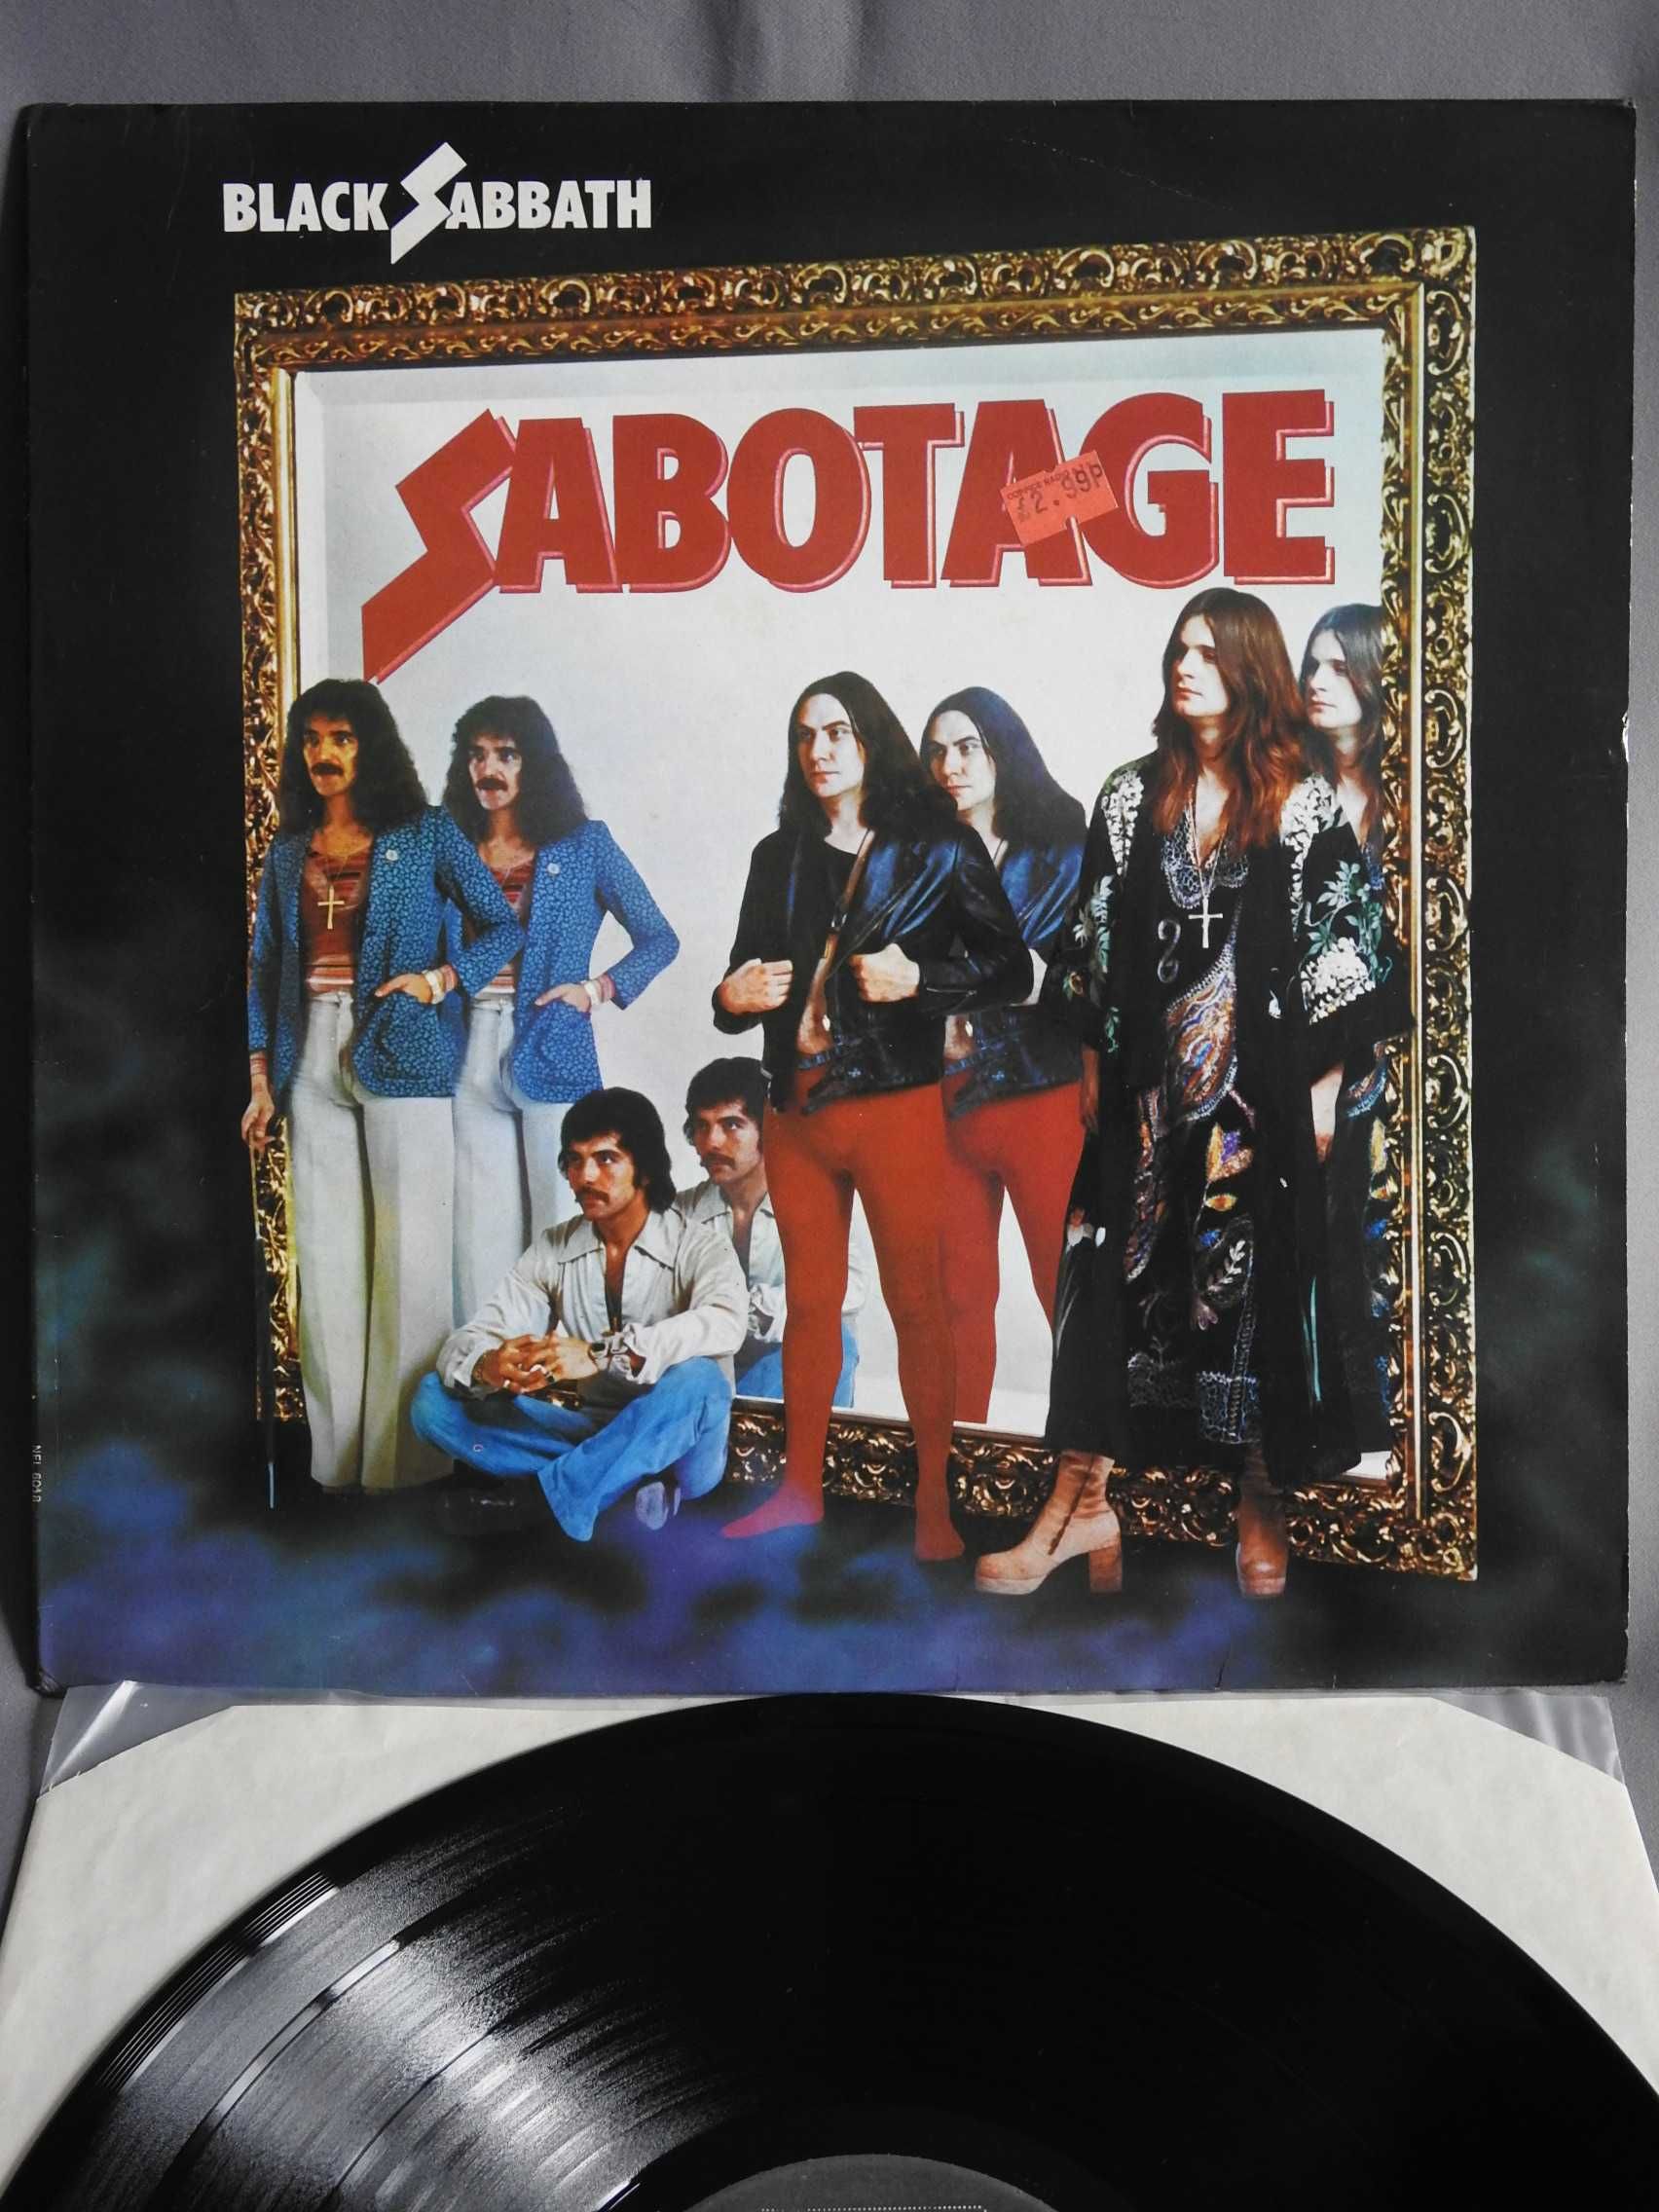 Black Sabbath Sabotage LP 1975 пластинка re1982 Ireland / UK EX+